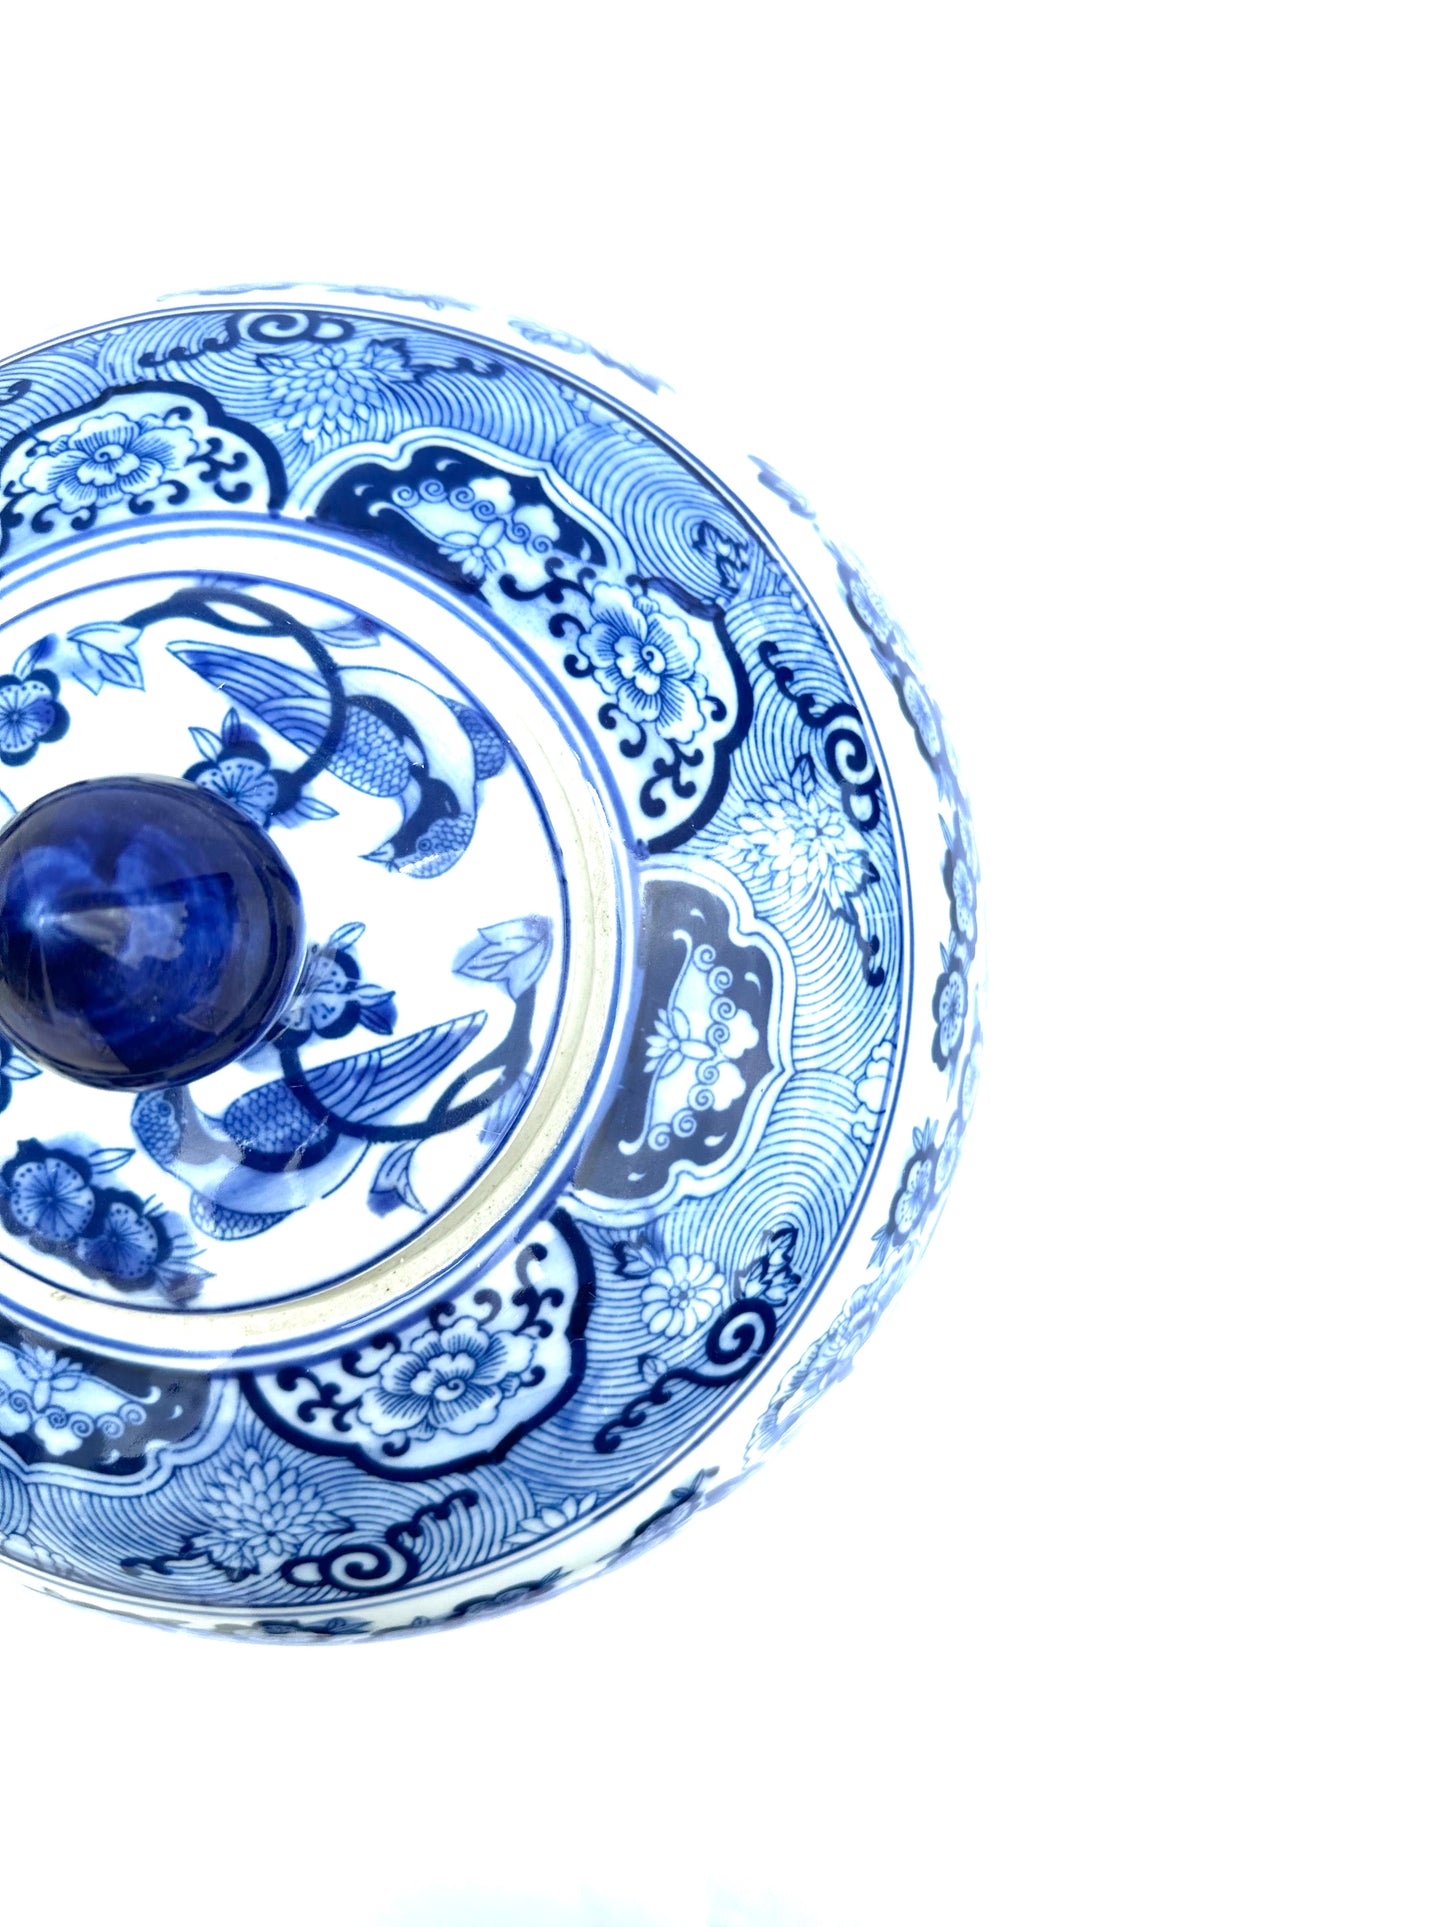 Blue & white Porcelain Ball